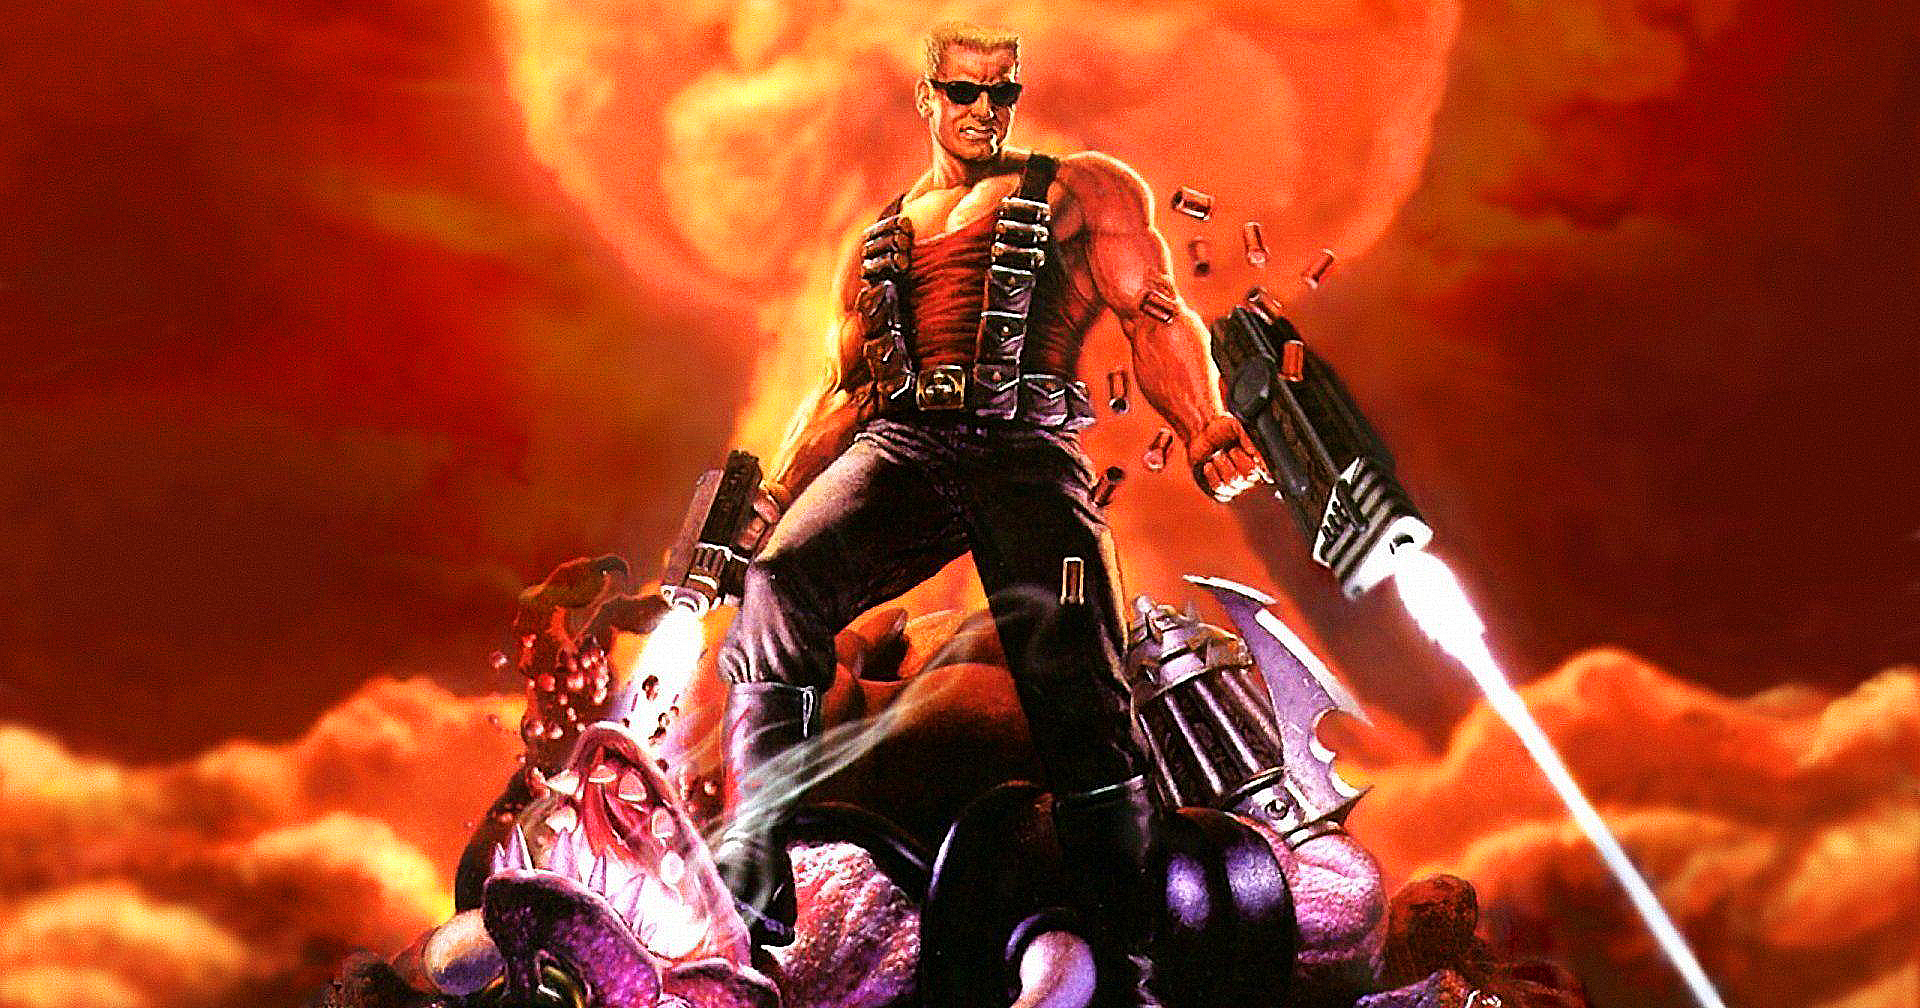 เกมแอ็กชันคลาสสิก ‘Duke Nukem’ ถูกดัดแปลงเป็นหนังโดยผู้สร้าง ‘Cobra Kai’